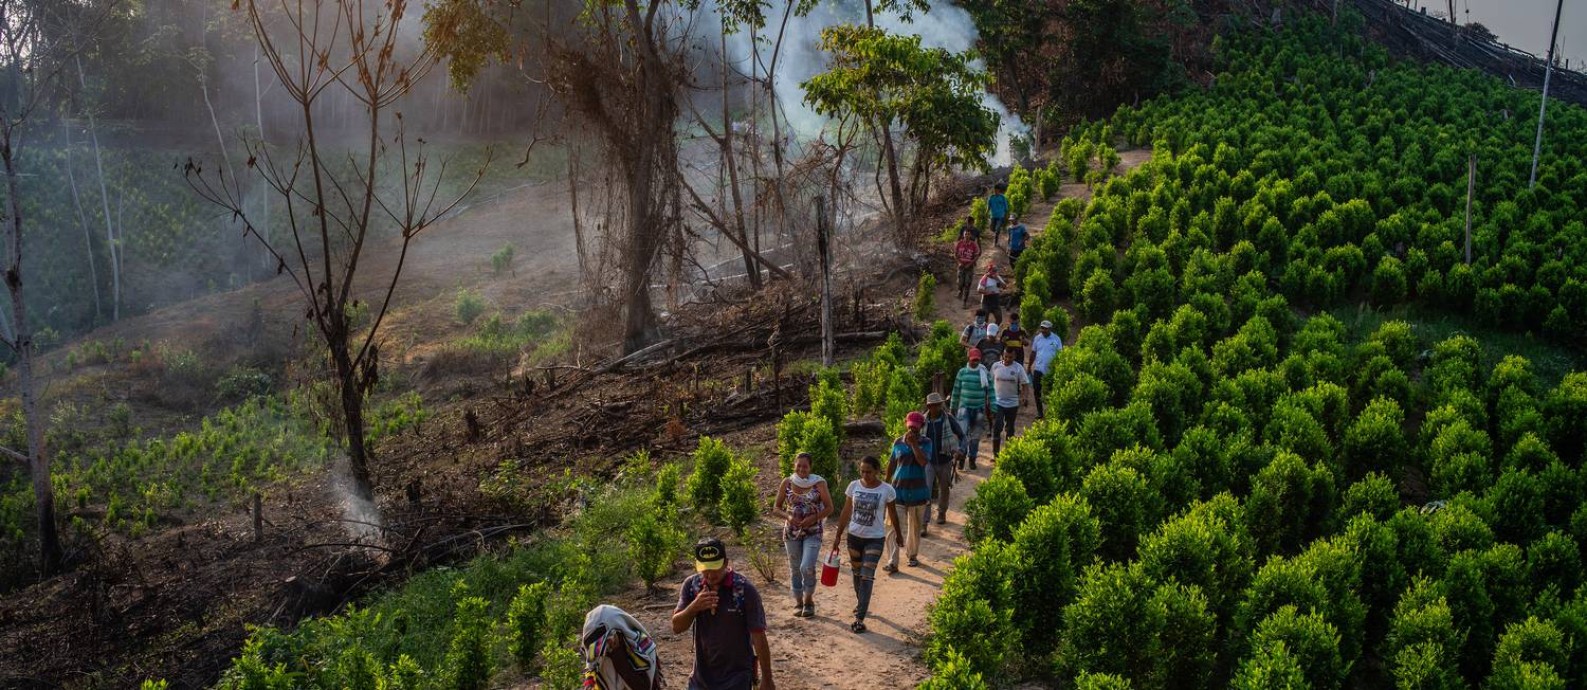  Agricultores em plantação de folha de coca na cidade colombiana de La Paz, no departamento de Cesar, no Norte do país, onde grupos criminosos substituíram a antiga guerrilha
Foto: FEDERICO RIOS / NYT